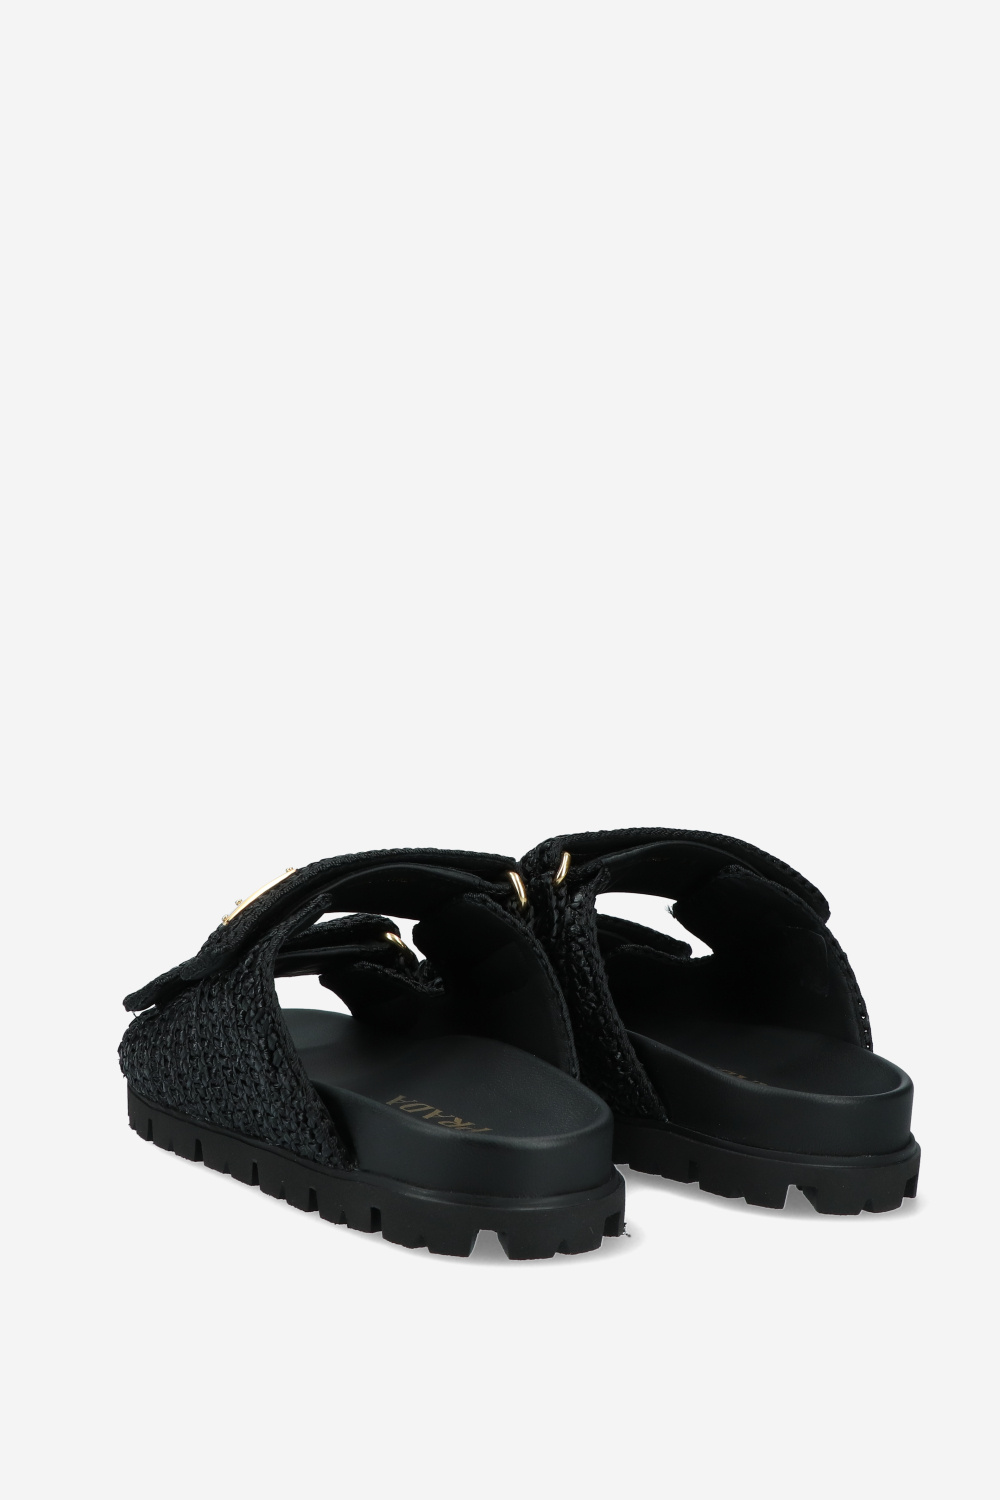 Prada Sandals Black